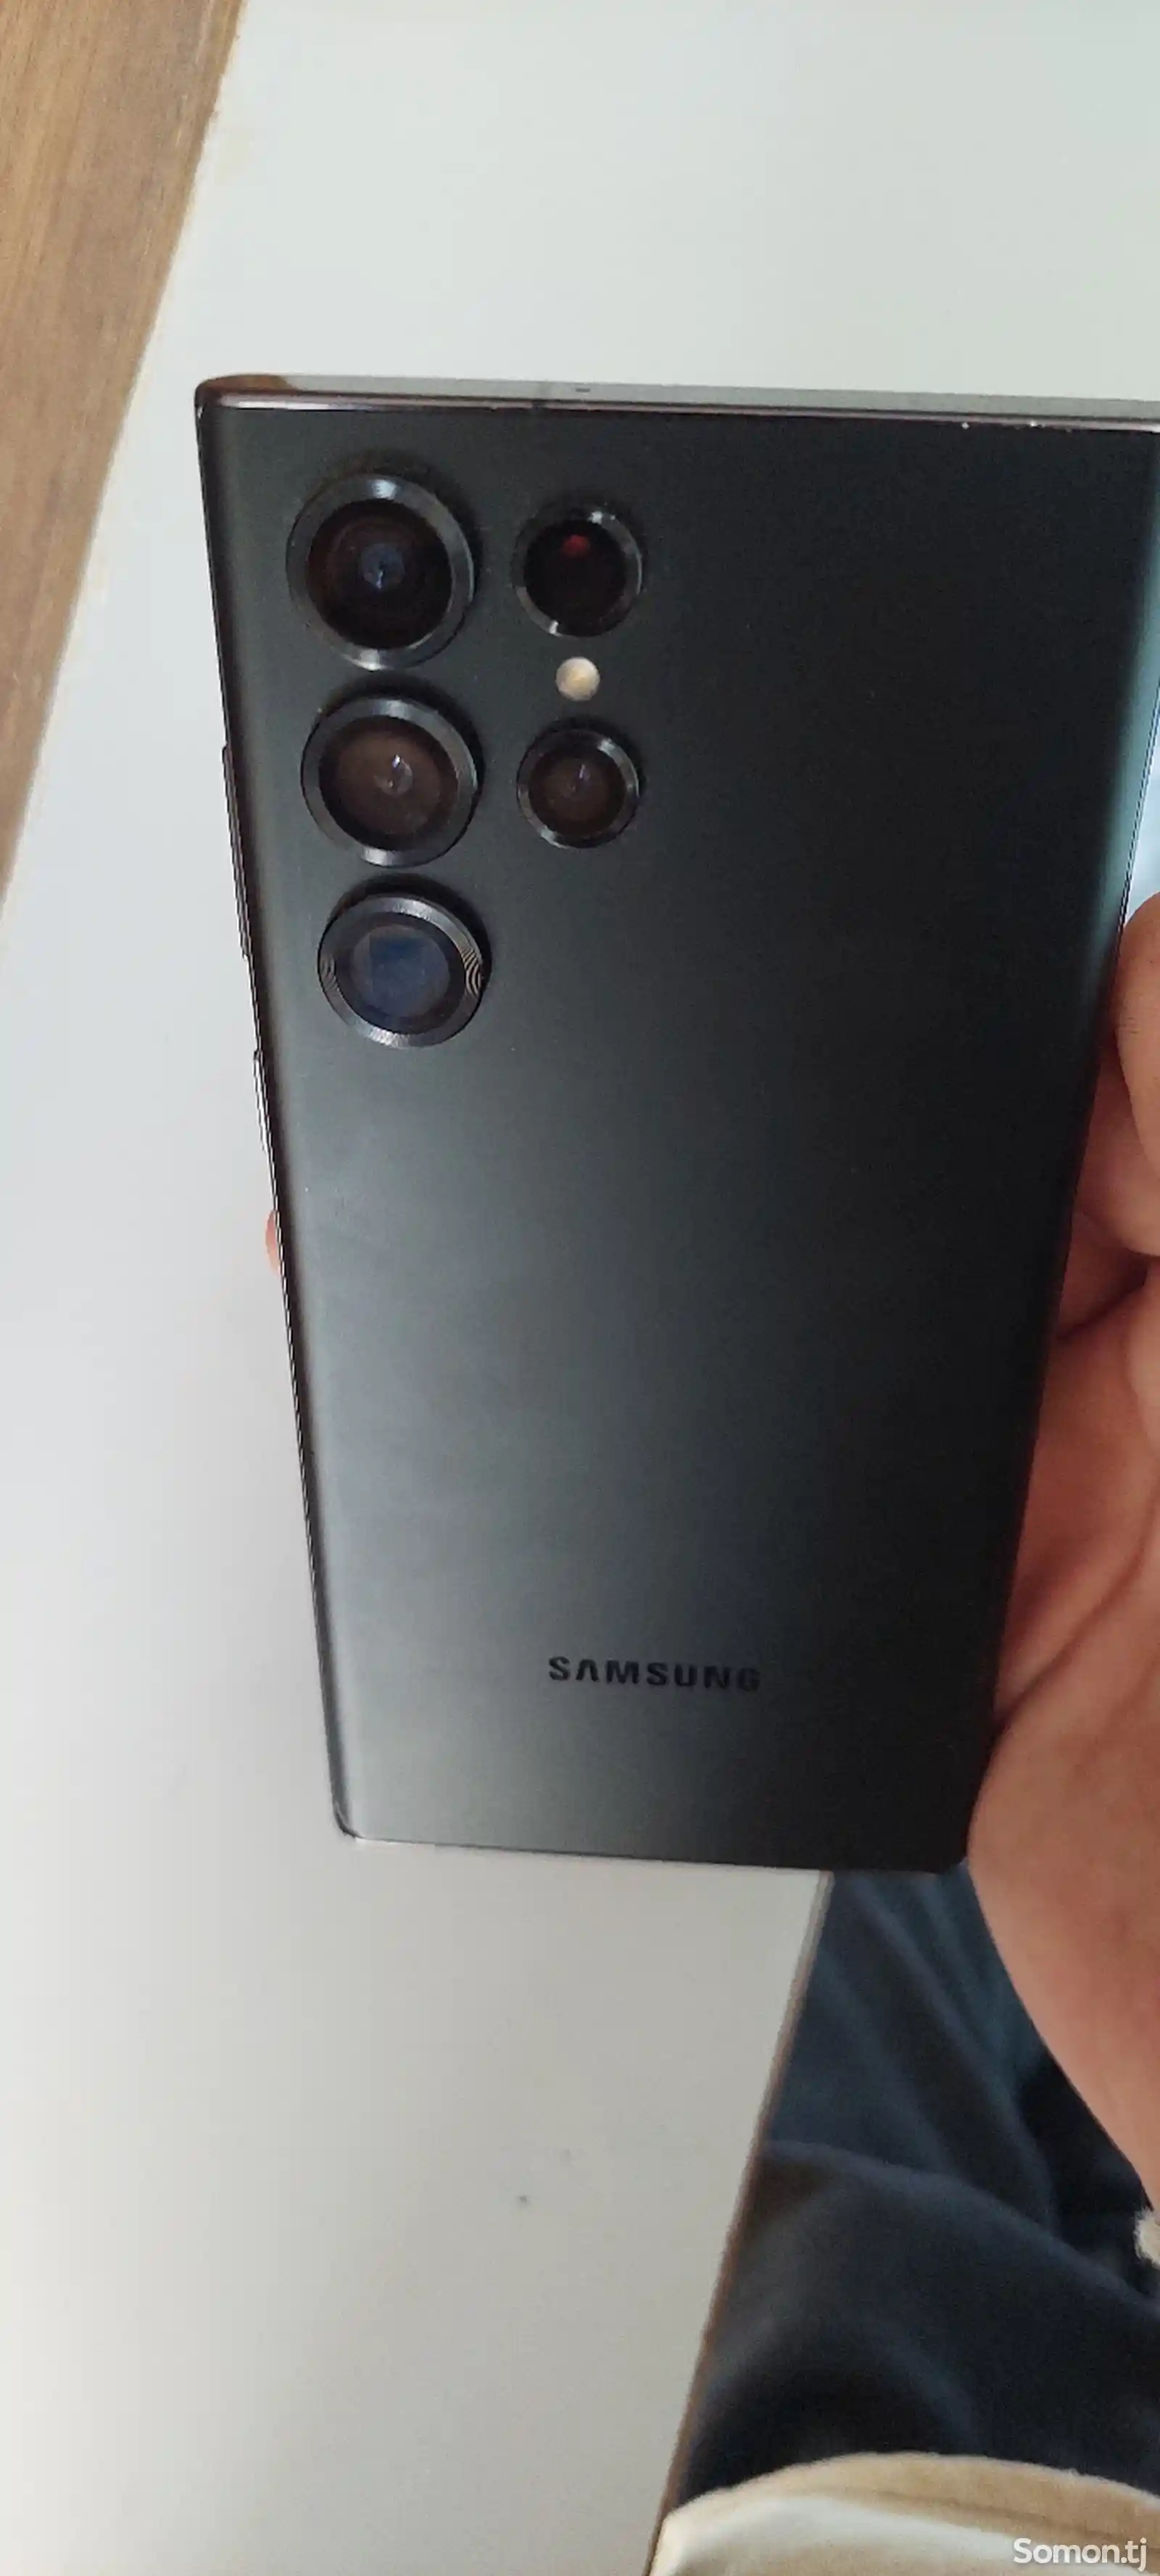 Samsung Galaxy S22 Ultra-2